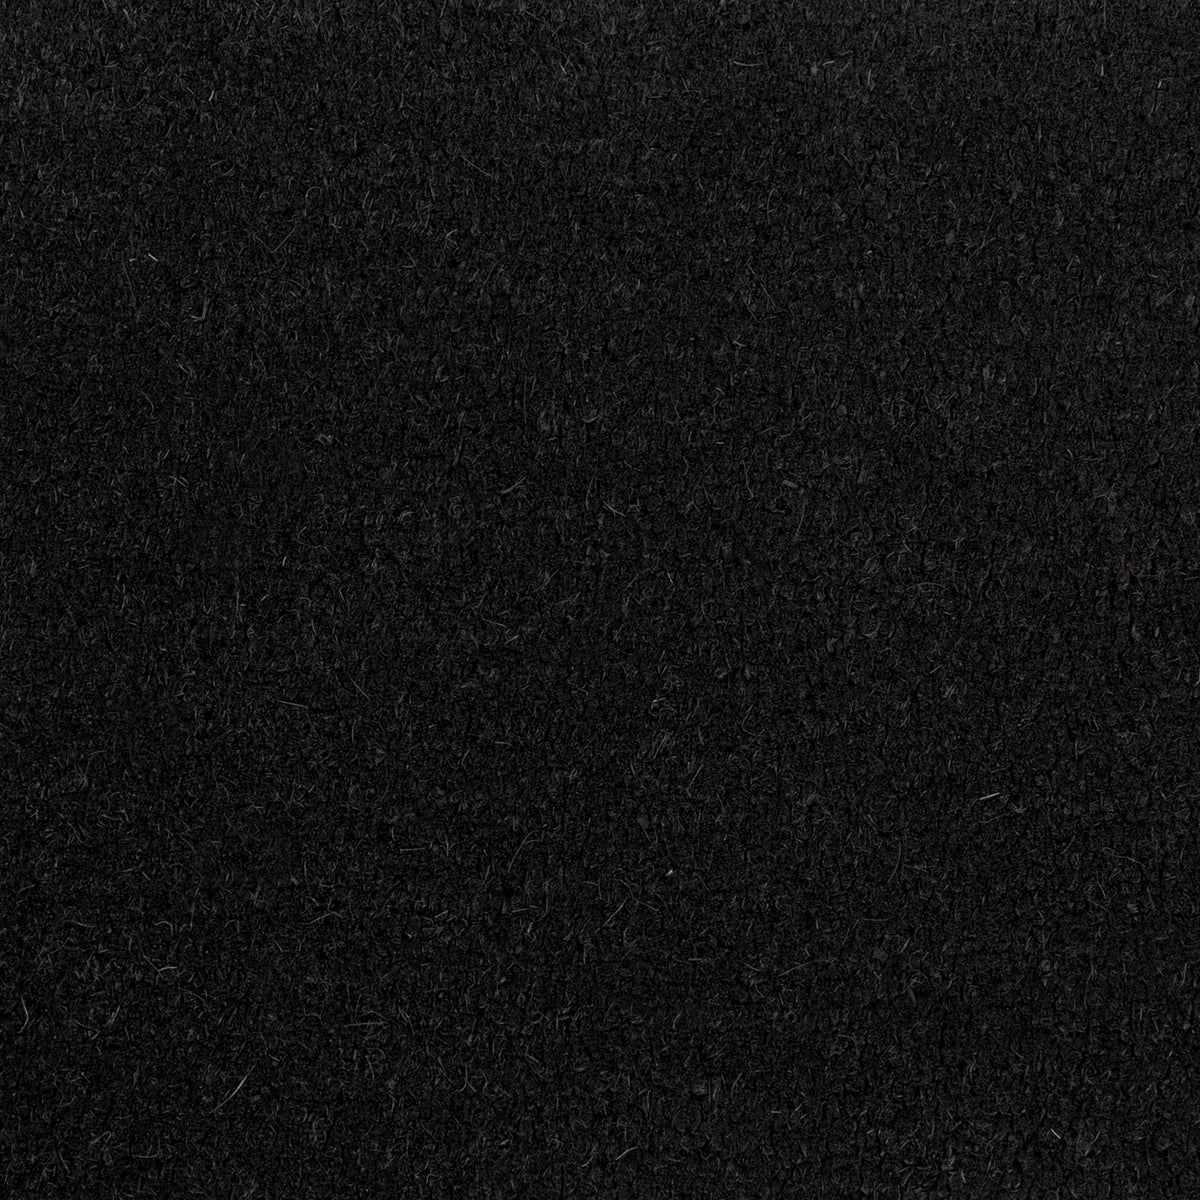 Black |#| Indoor/Outdoor Solid Coir Entryway Doormat with Non-Slip Backing in Black